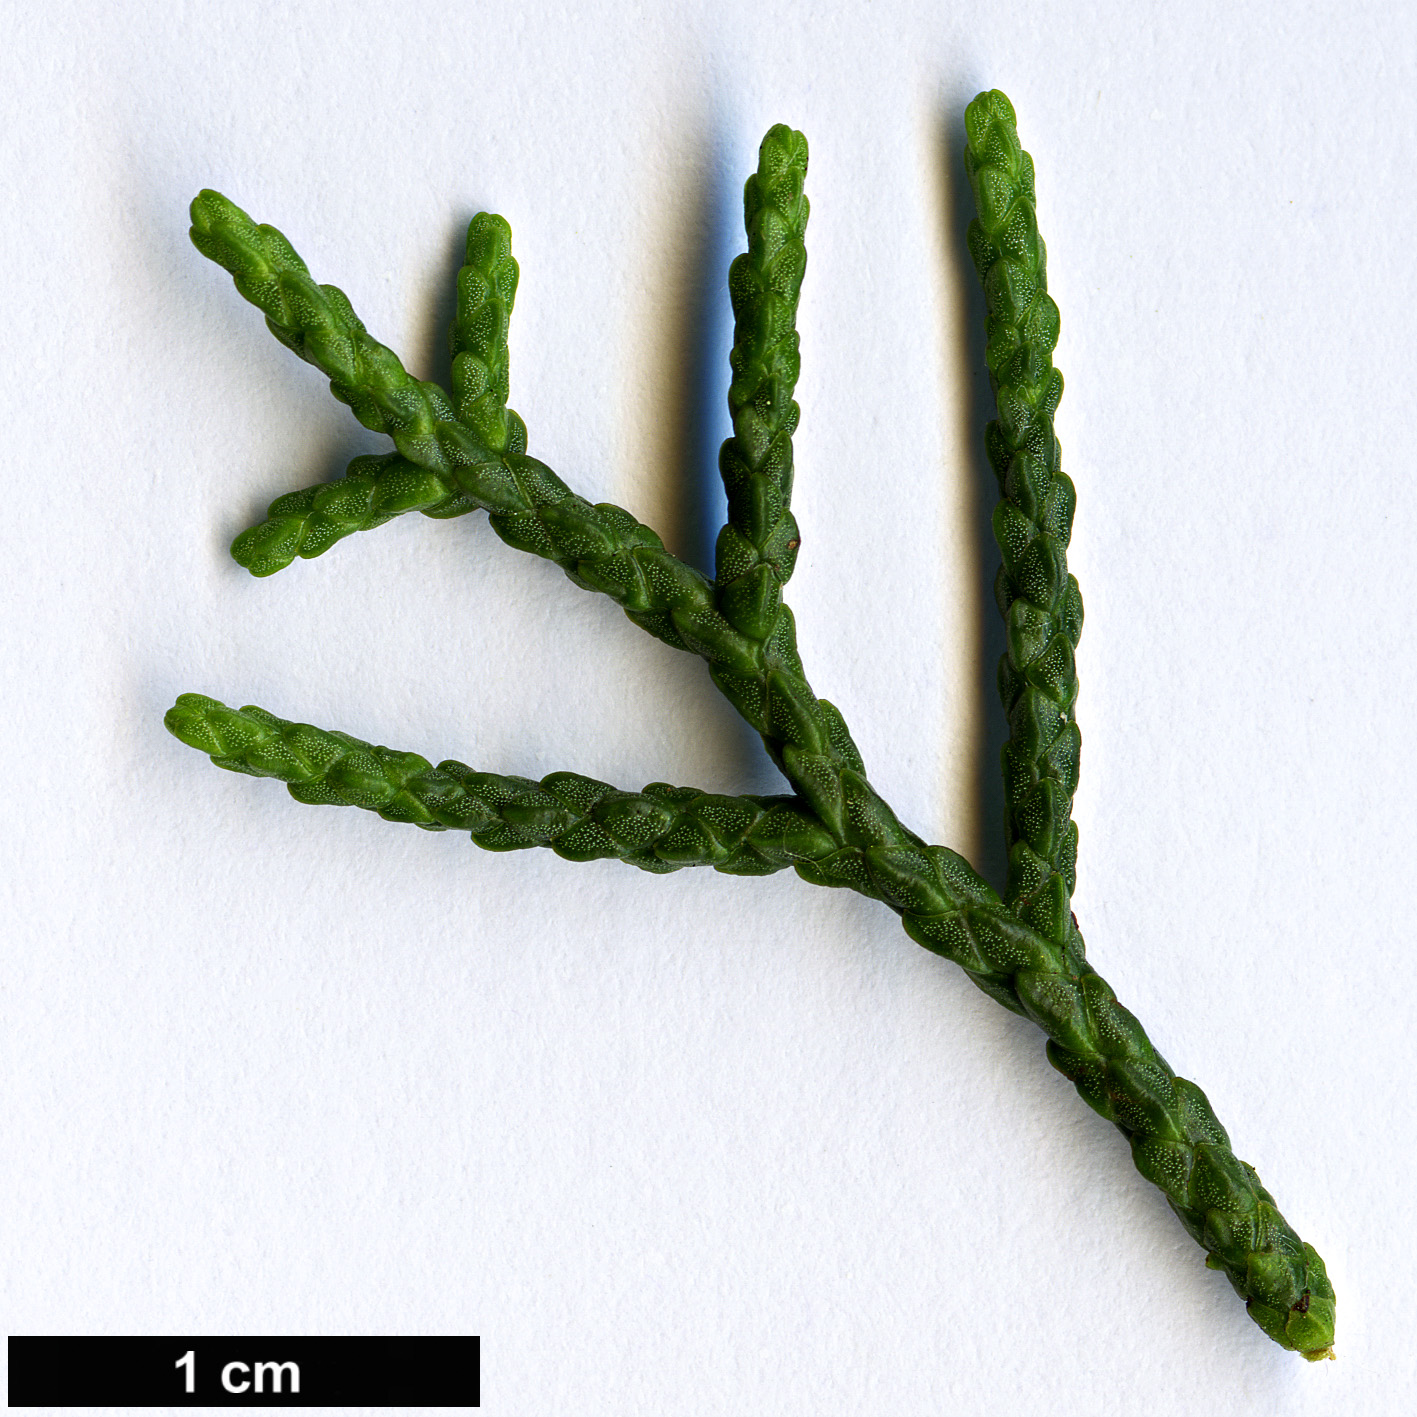 High resolution image: Family: Podocarpaceae - Genus: Halocarpus - Taxon: biformis